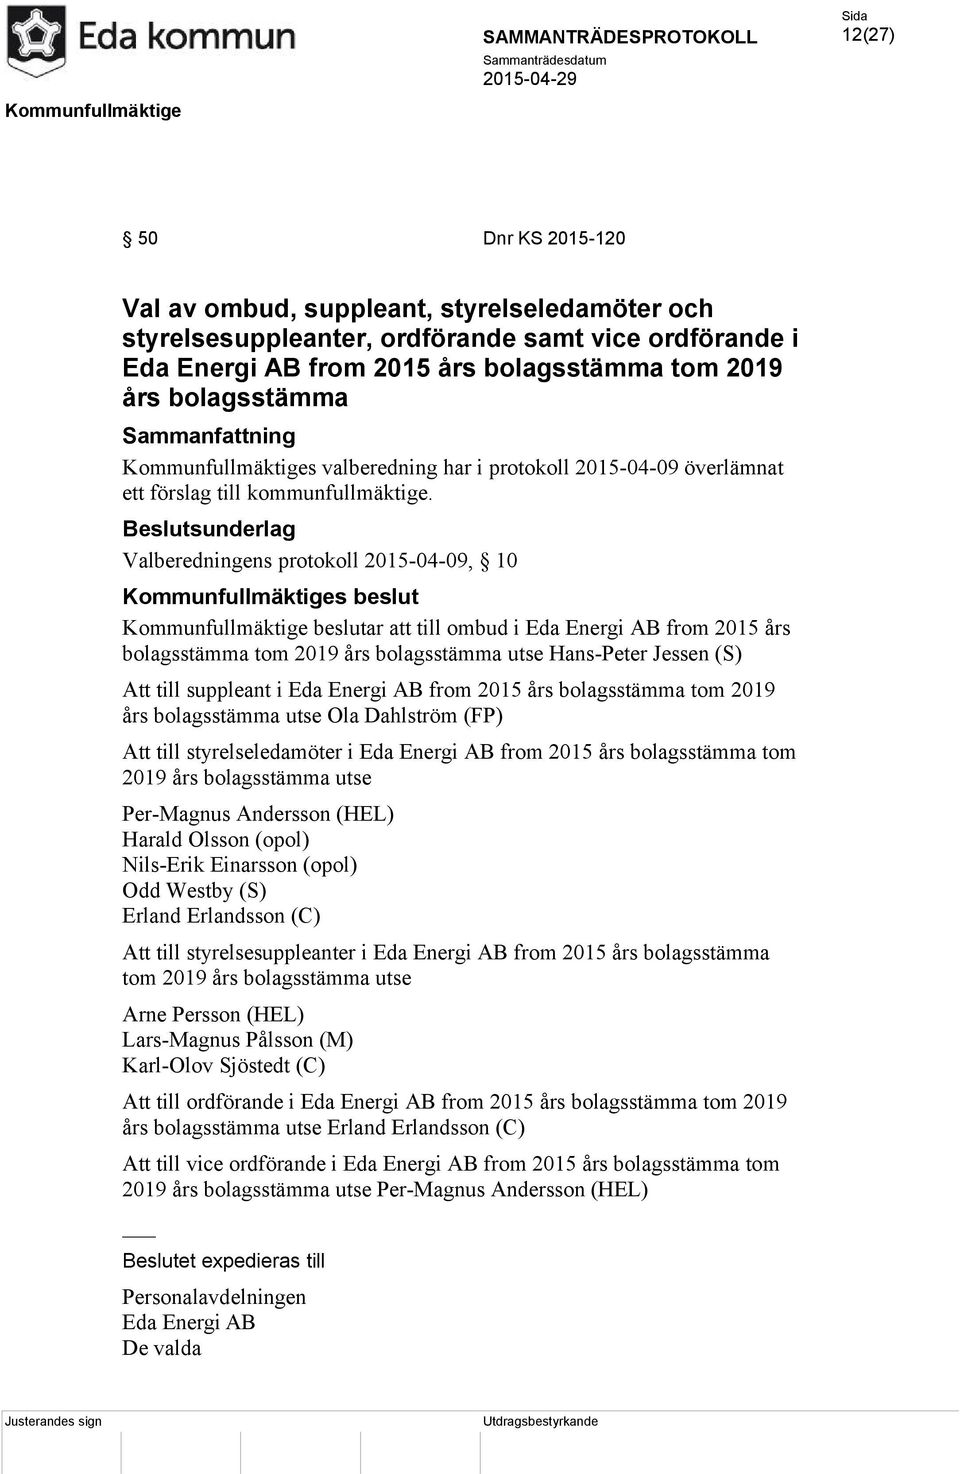 Valberedningens protokoll 2015-04-09, 10 Kommunfullmäktige beslutar att till ombud i Eda Energi AB from 2015 års bolagsstämma tom 2019 års bolagsstämma utse Hans-Peter Jessen (S) Att till suppleant i